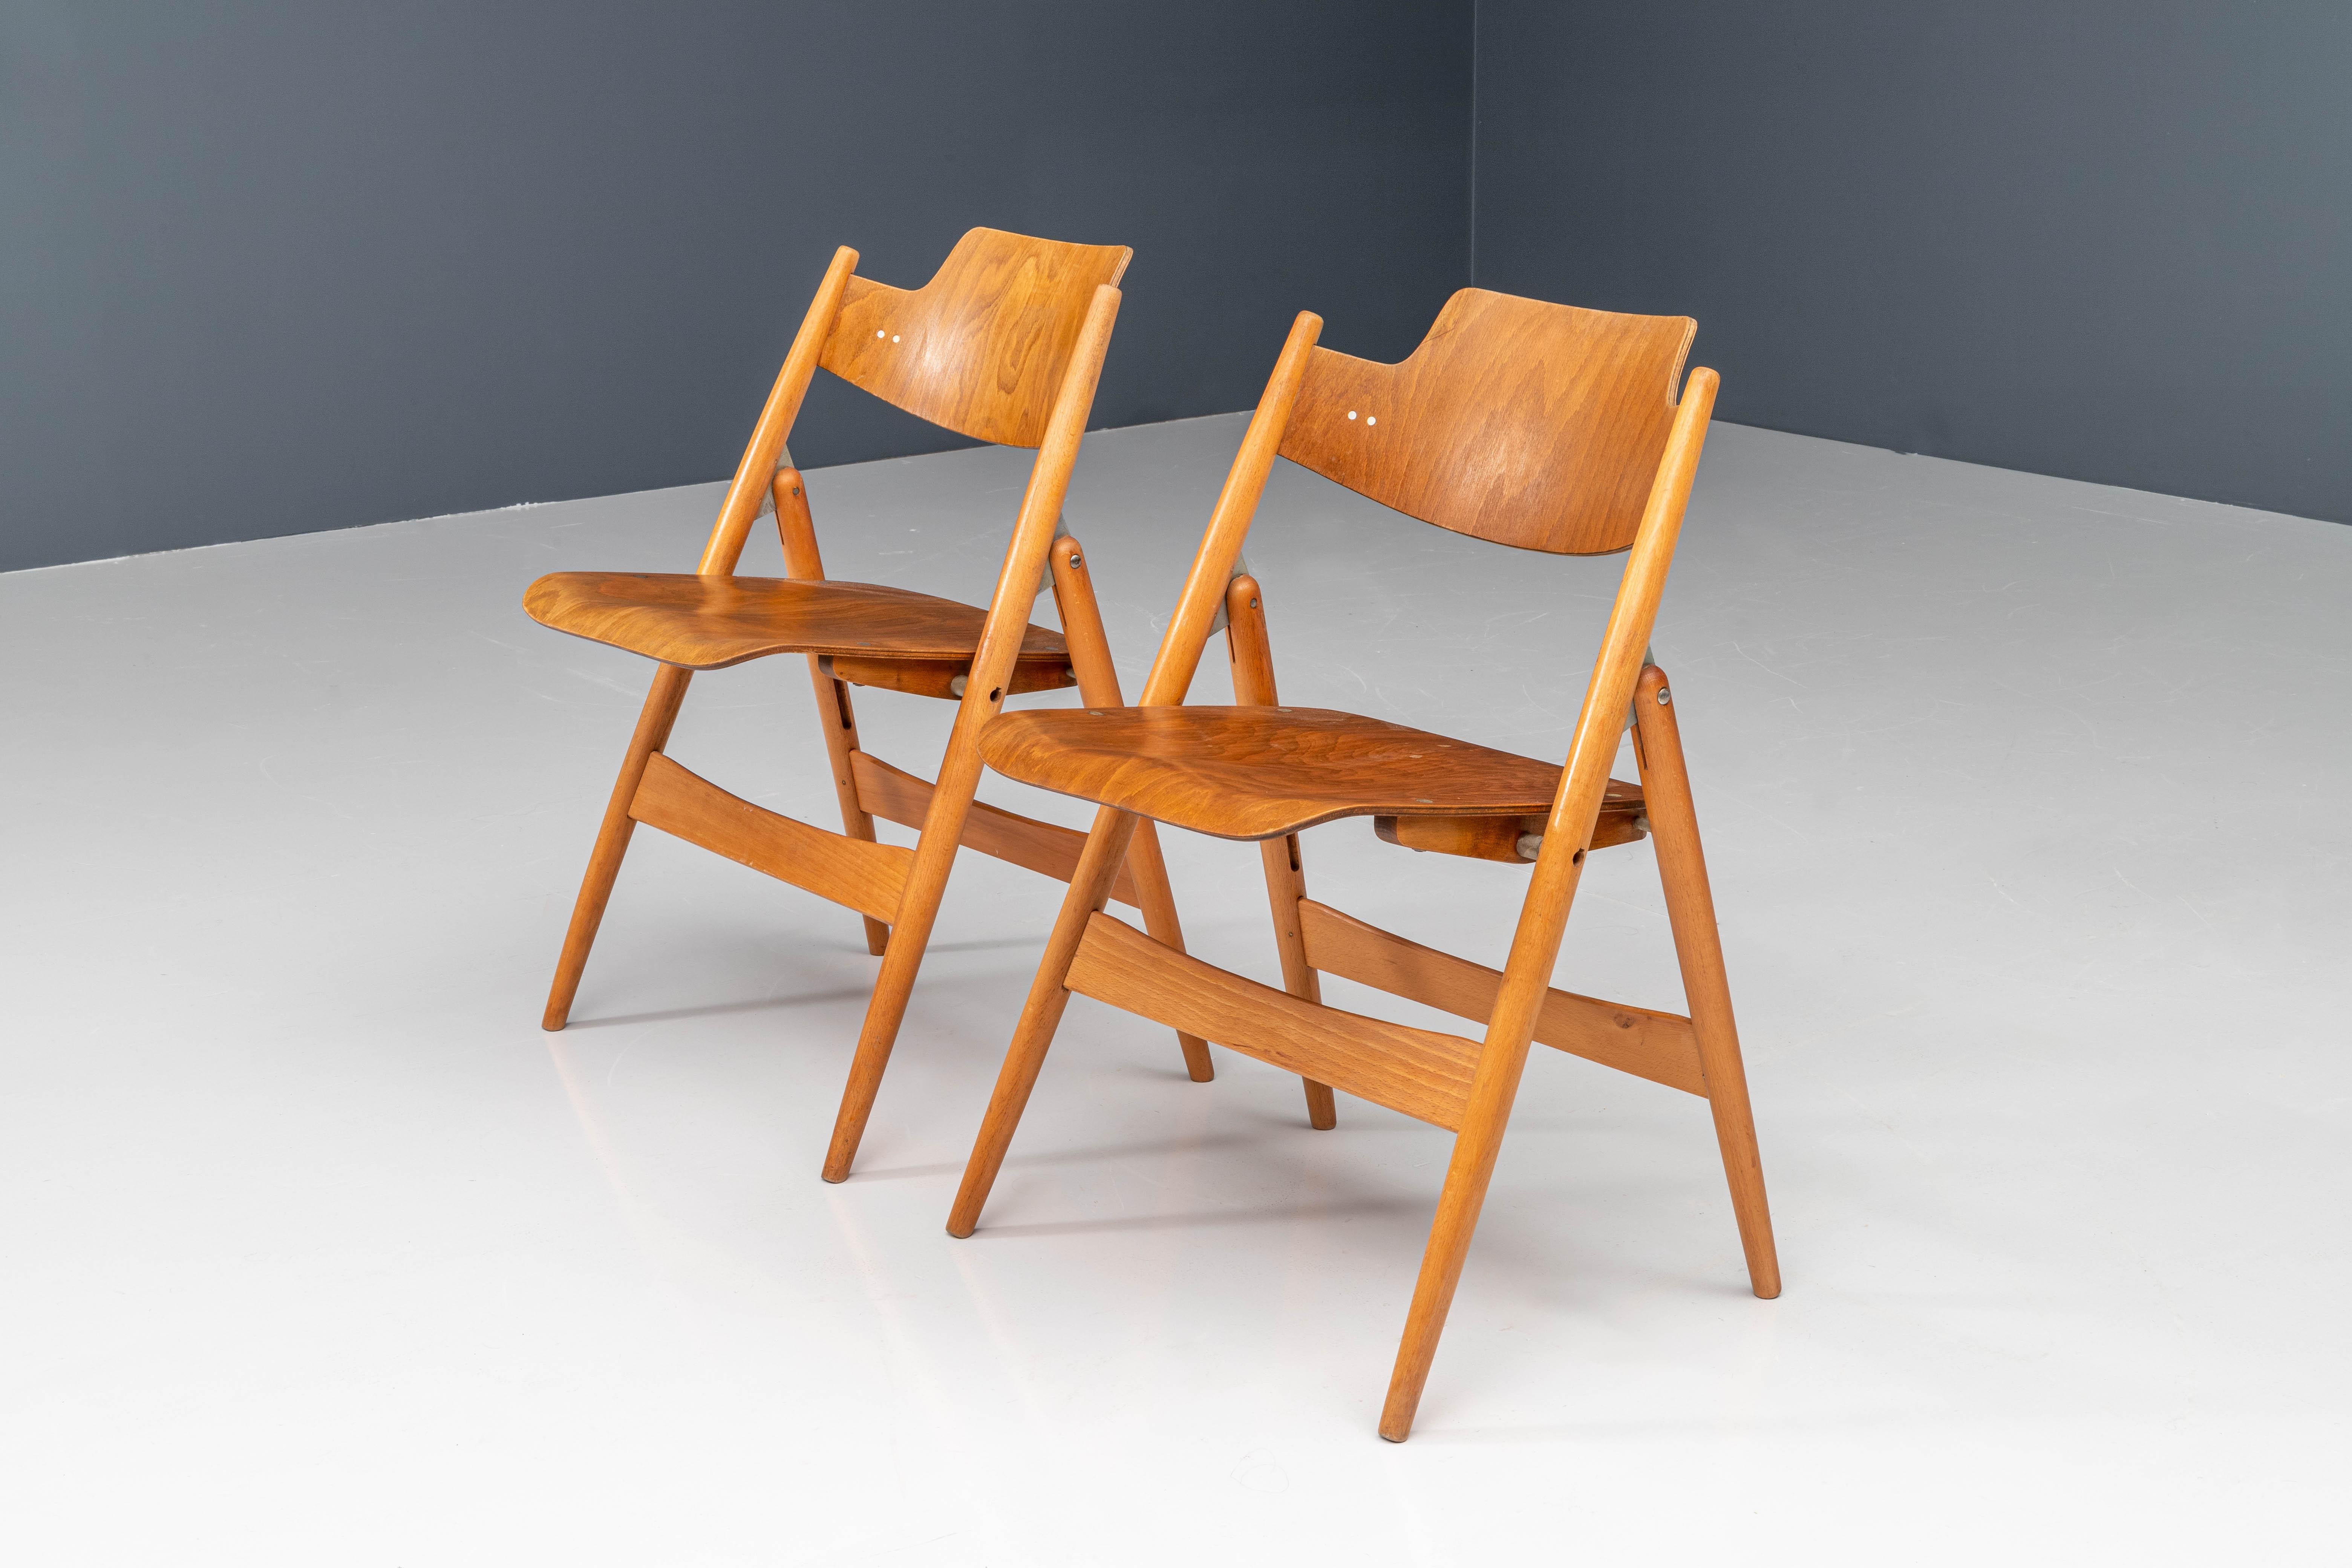 Diese Klappstühle, Modell SE18, wurden 1952 vom deutschen Architekten Egon Eiermann für Wilde & Spieth entworfen. Das Gestell besteht aus Buchenholz, während Sitz und Rückenlehne aus Formsperrholz mit Buchenfurnier gefertigt sind. Der Stuhl ist